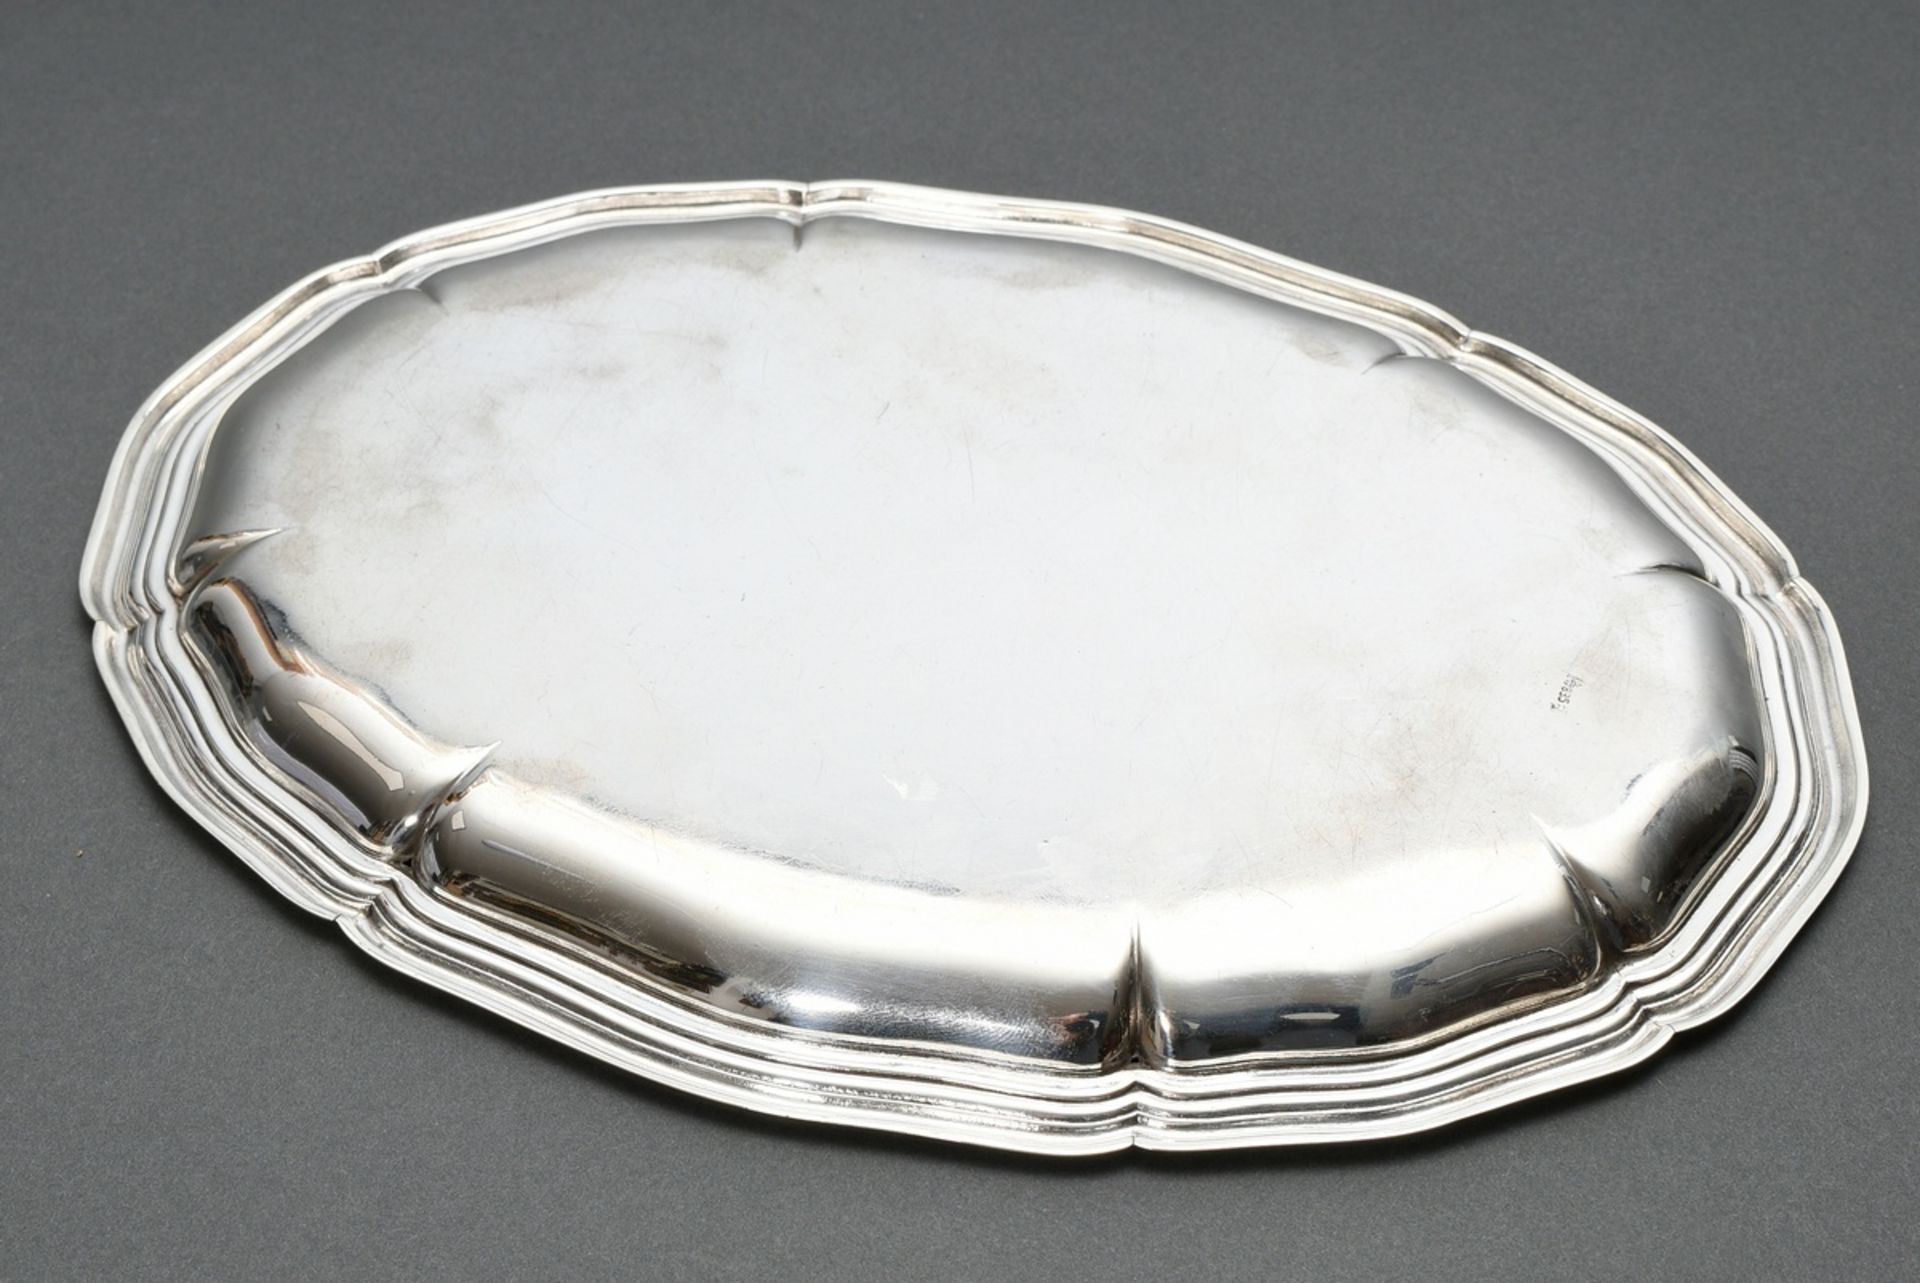 Ovales Tablett mit Chippendale Rand, Silber 835, 202g, 25x18,5cm, Gebrauchspuren - Bild 2 aus 3